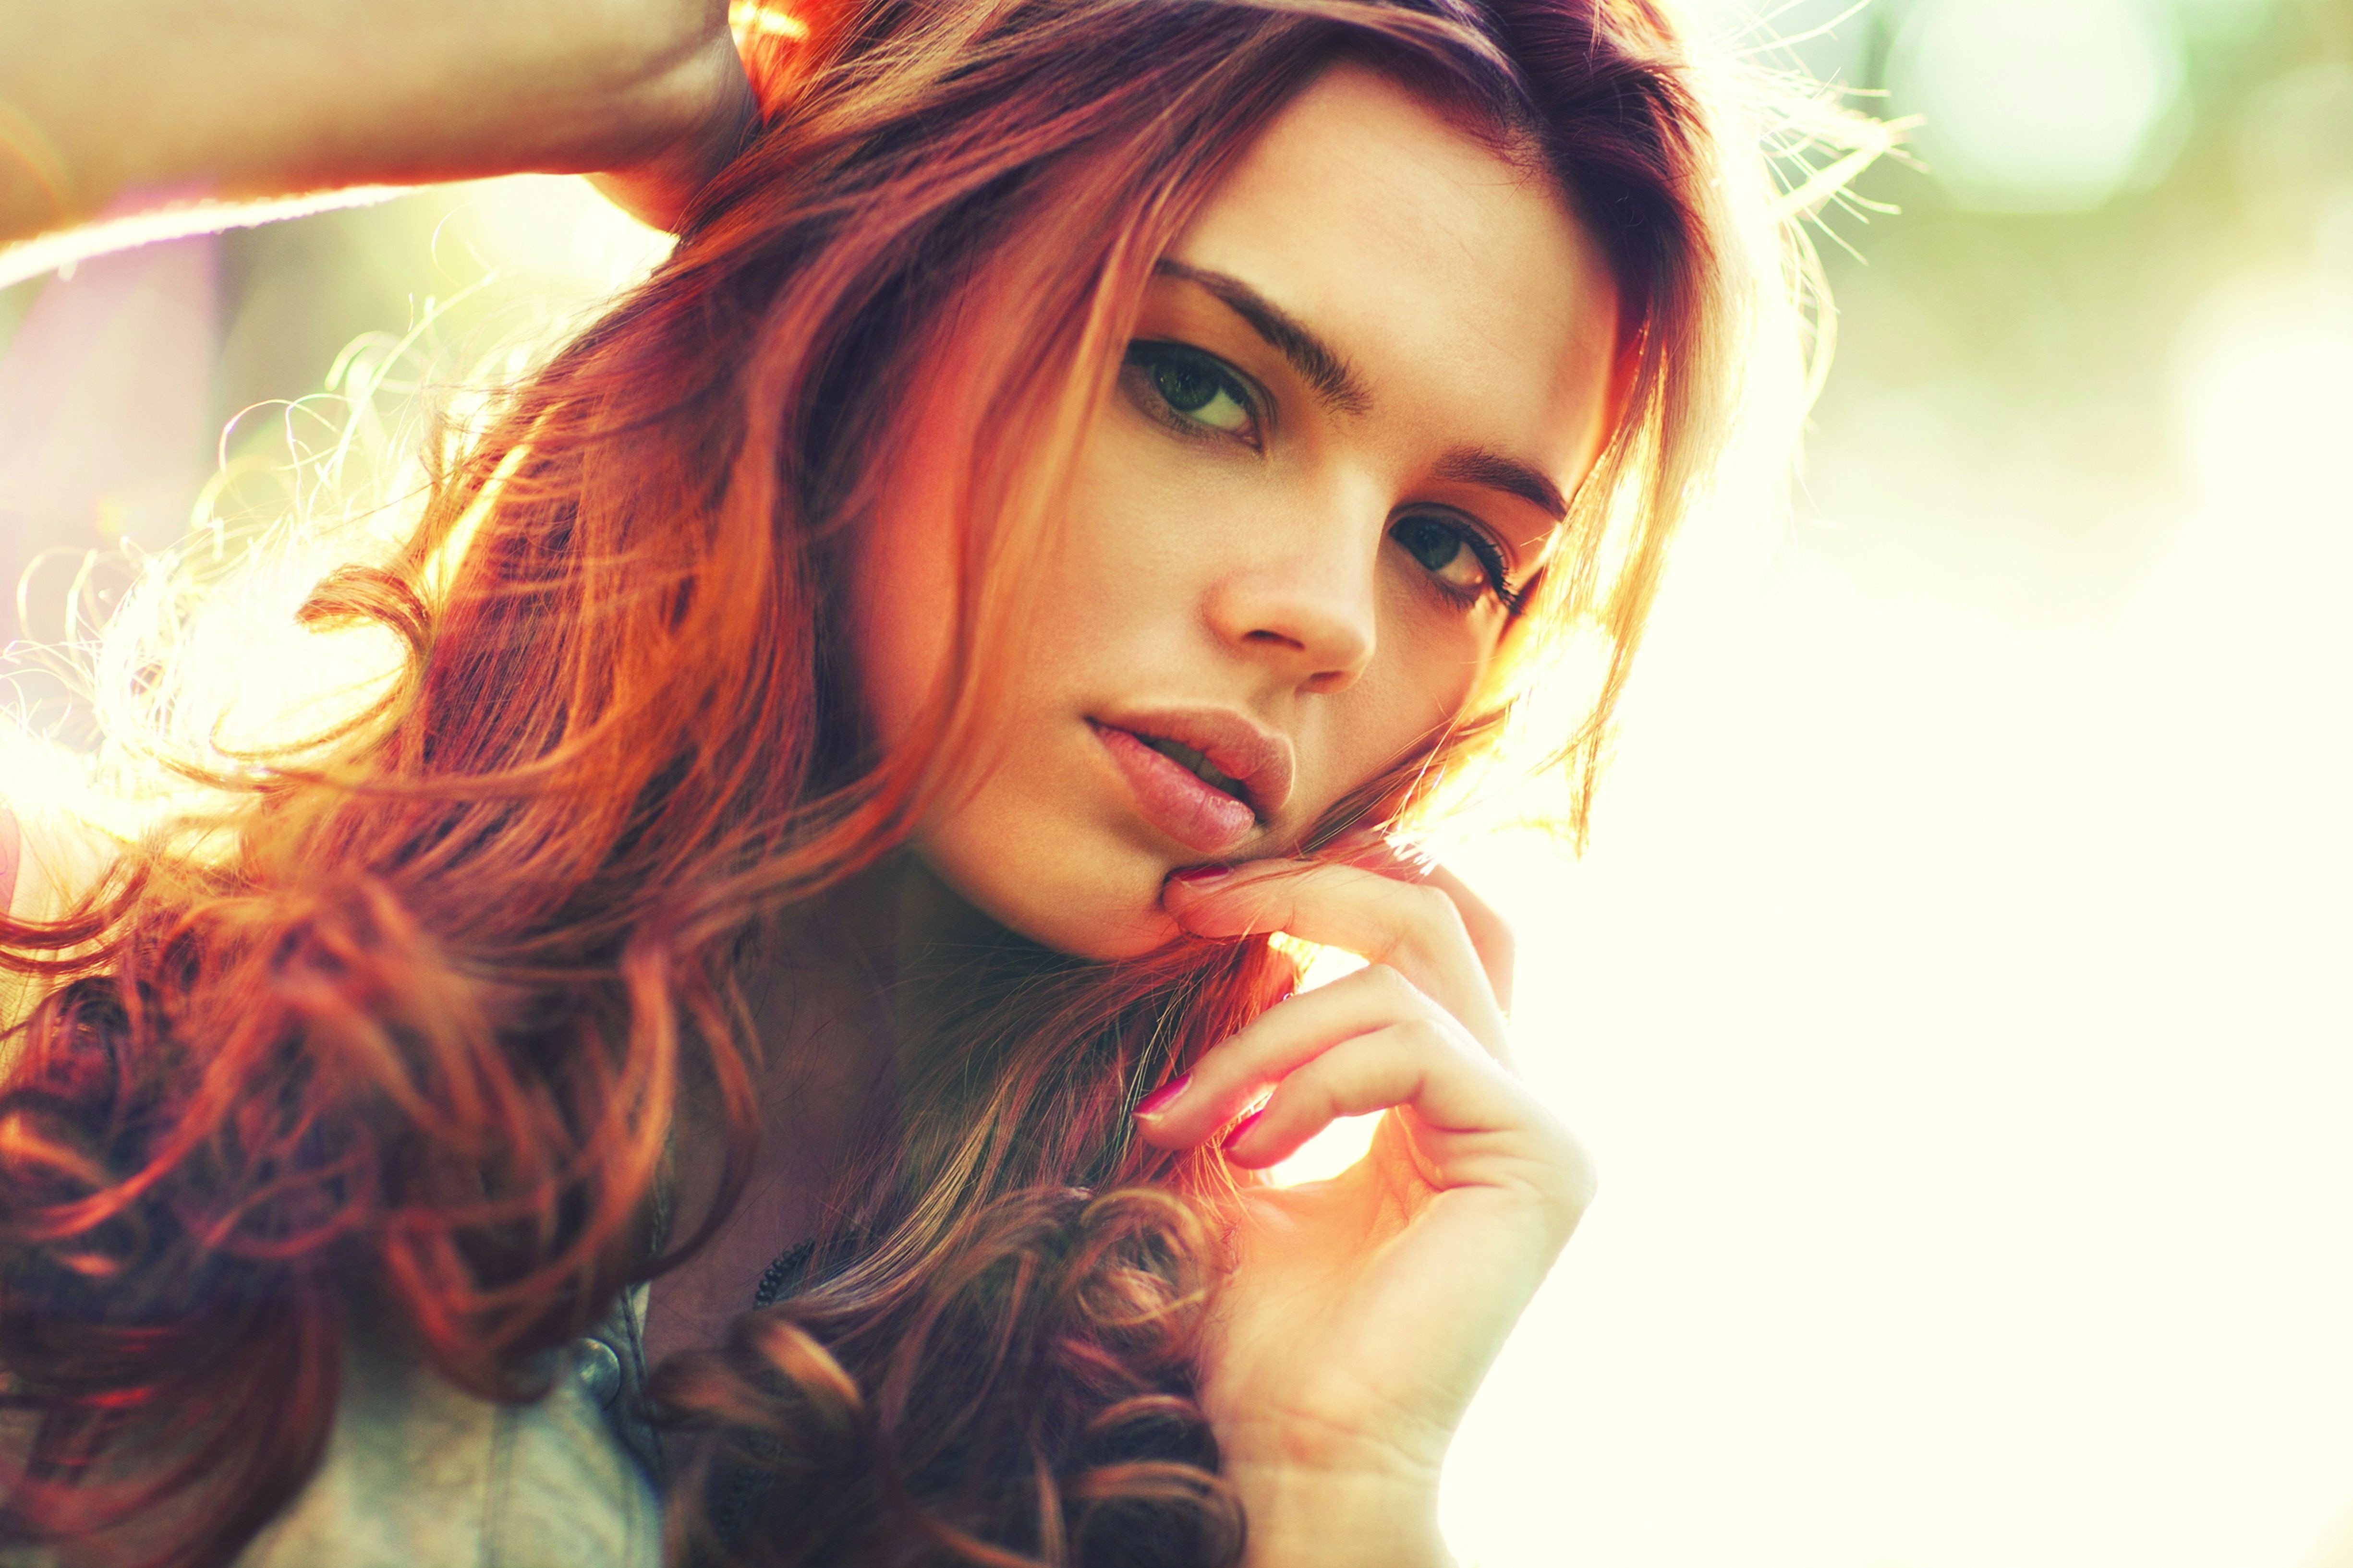 model, redhead, women, face, hair, sensual iphone wallpaper